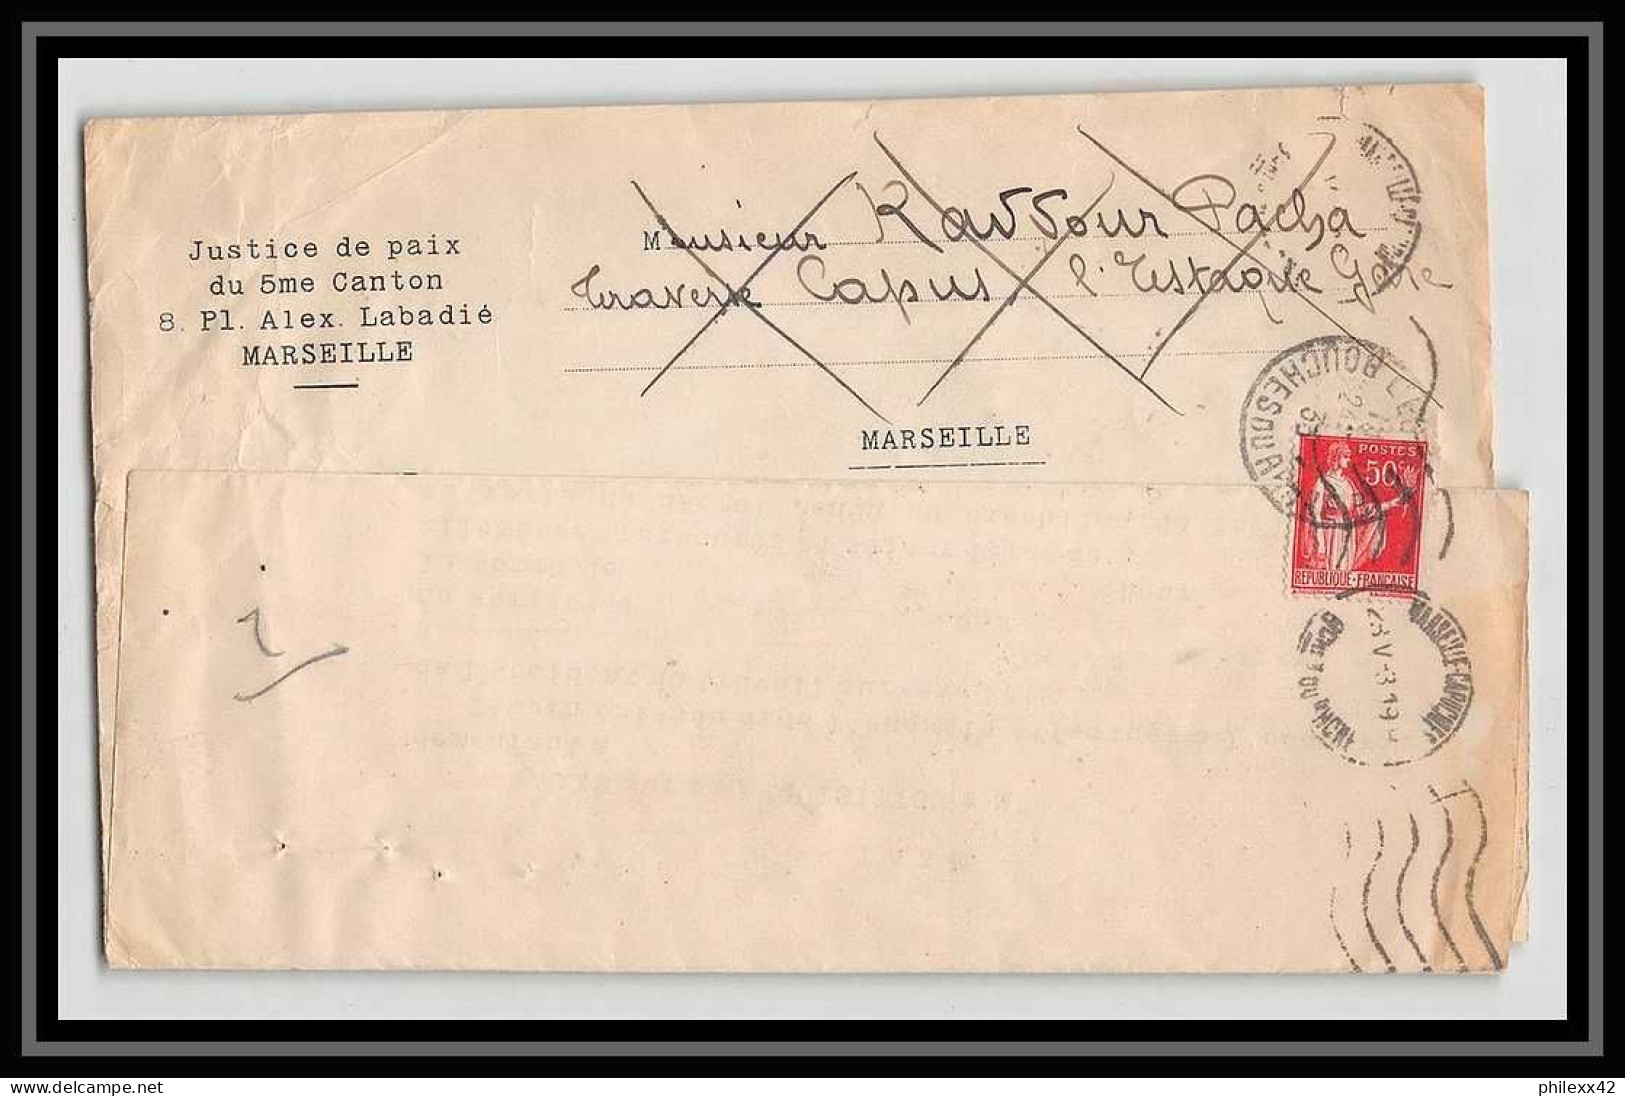 107304 lot de 17 Lettres Bouches du rhone dont recommandé Marseille pour oblitérations des rues